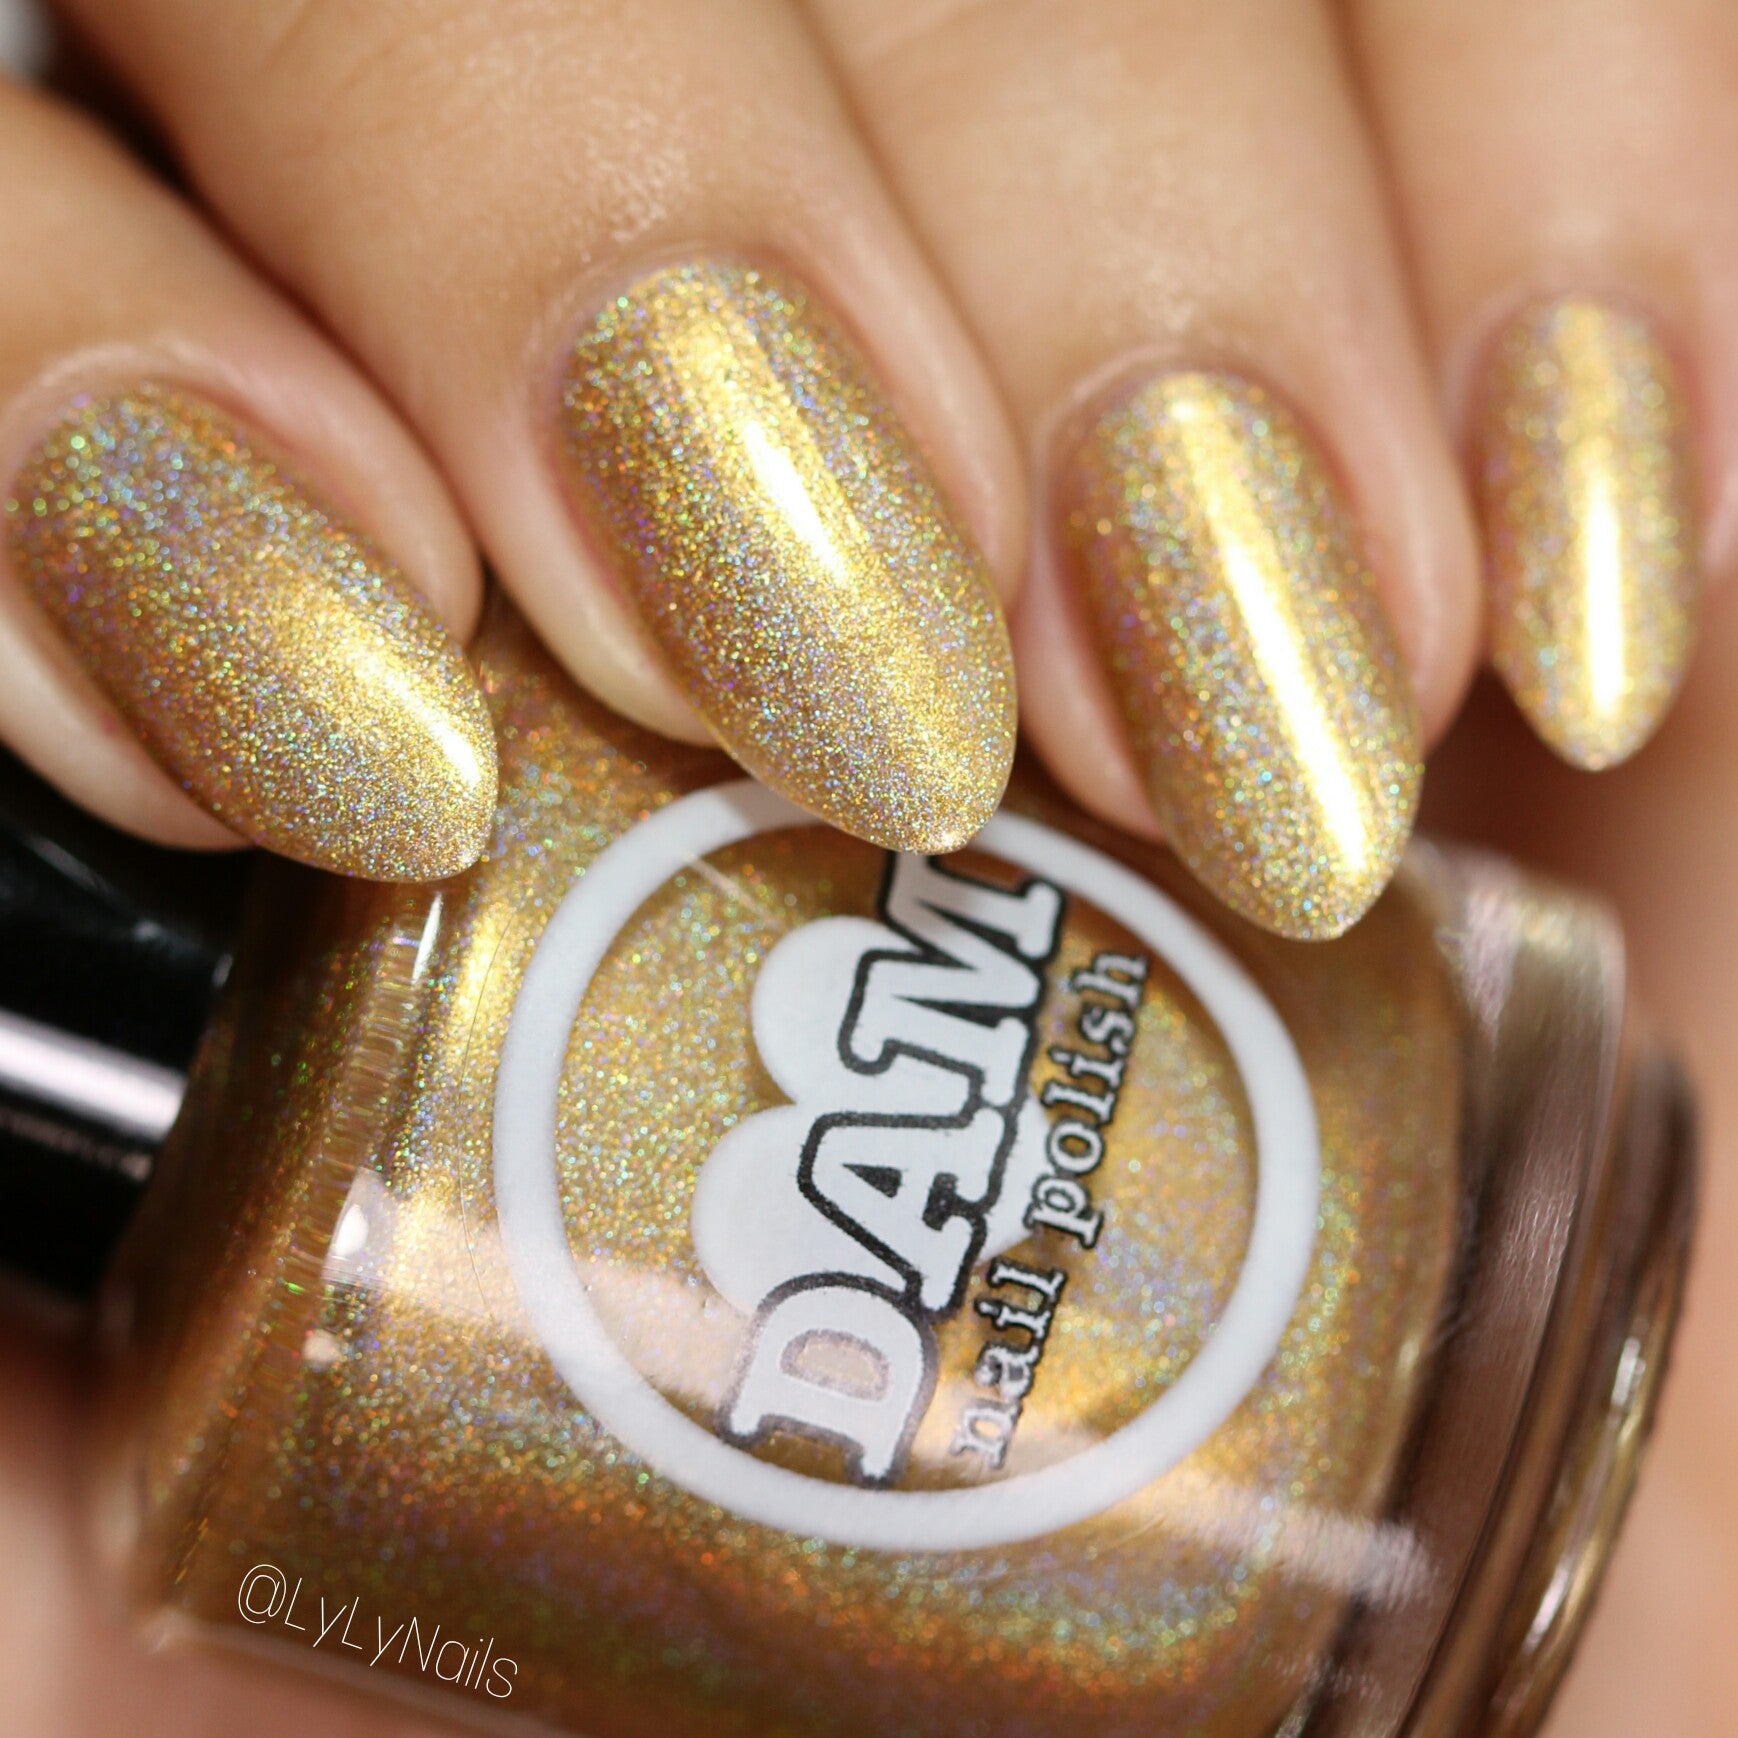 Holo Can You Gold? - Gold Holographic Nail Polish - Dam Nail Polish